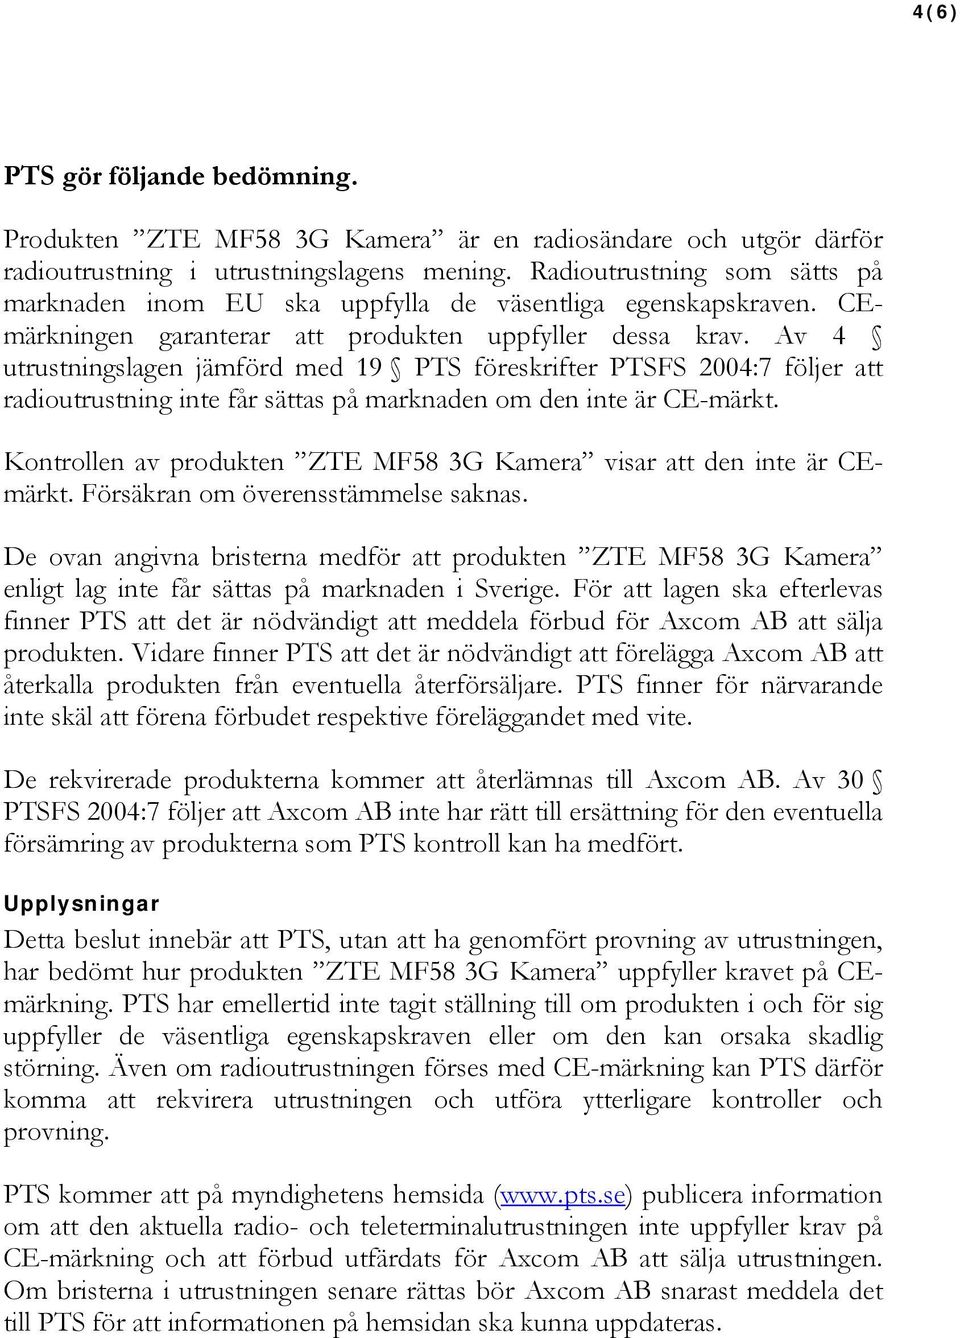 Av 4 utrustningslagen jämförd med 19 PTS föreskrifter PTSFS 2004:7 följer att radioutrustning inte får sättas på marknaden om den inte är CE-märkt.